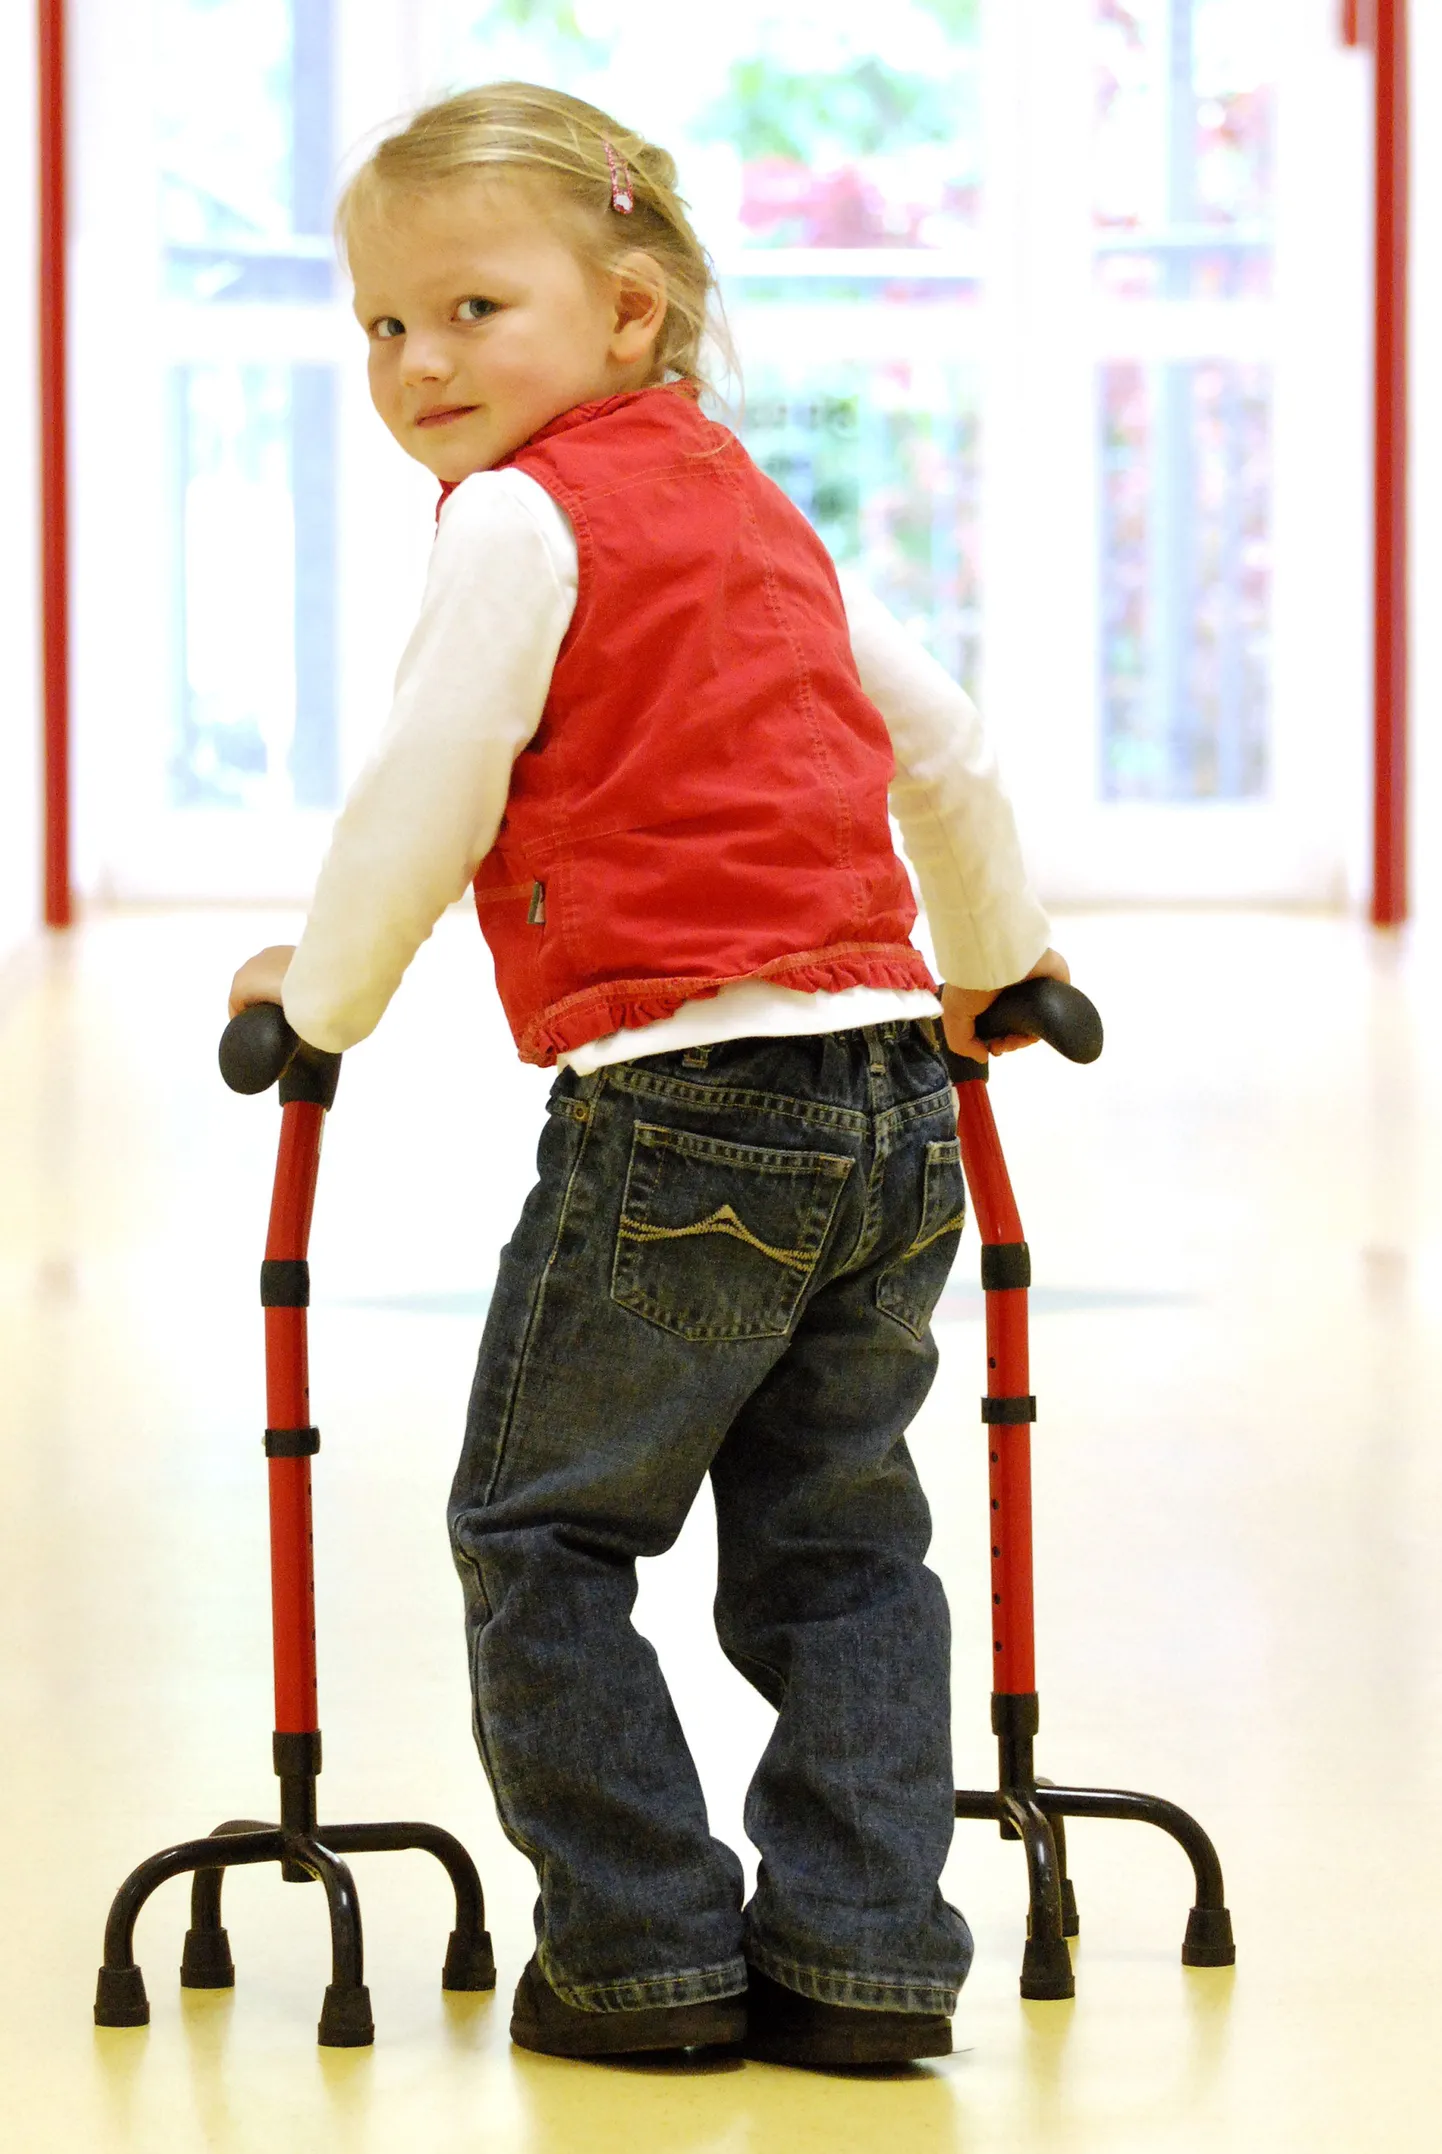 На Сааремаа на восстановительное лечение детей-инвалидов выделяют 20 000 евро.